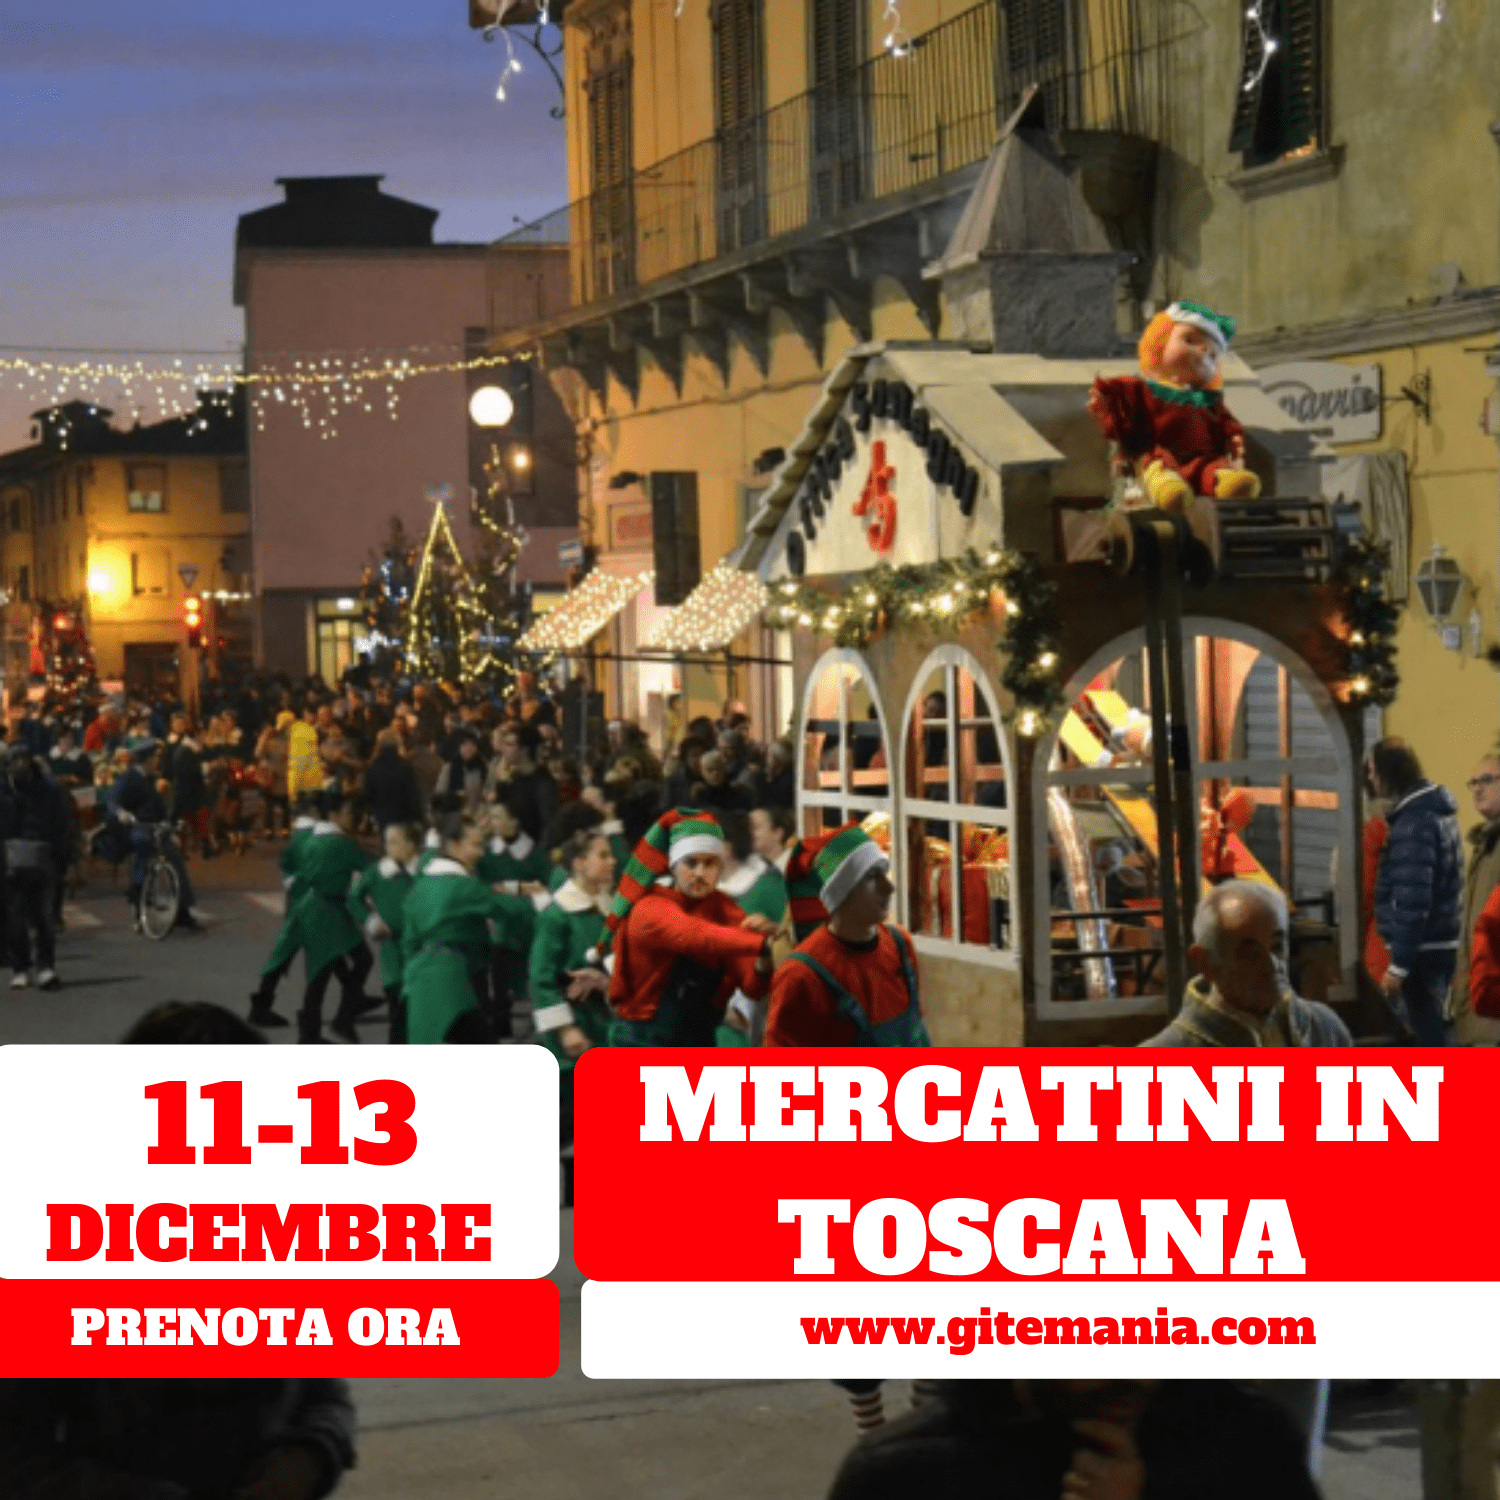 Giorno Di Natale 2020.Mercatini Di Natale In Toscana Dal 11 Al 13 Dicembre 2020 Gitemania